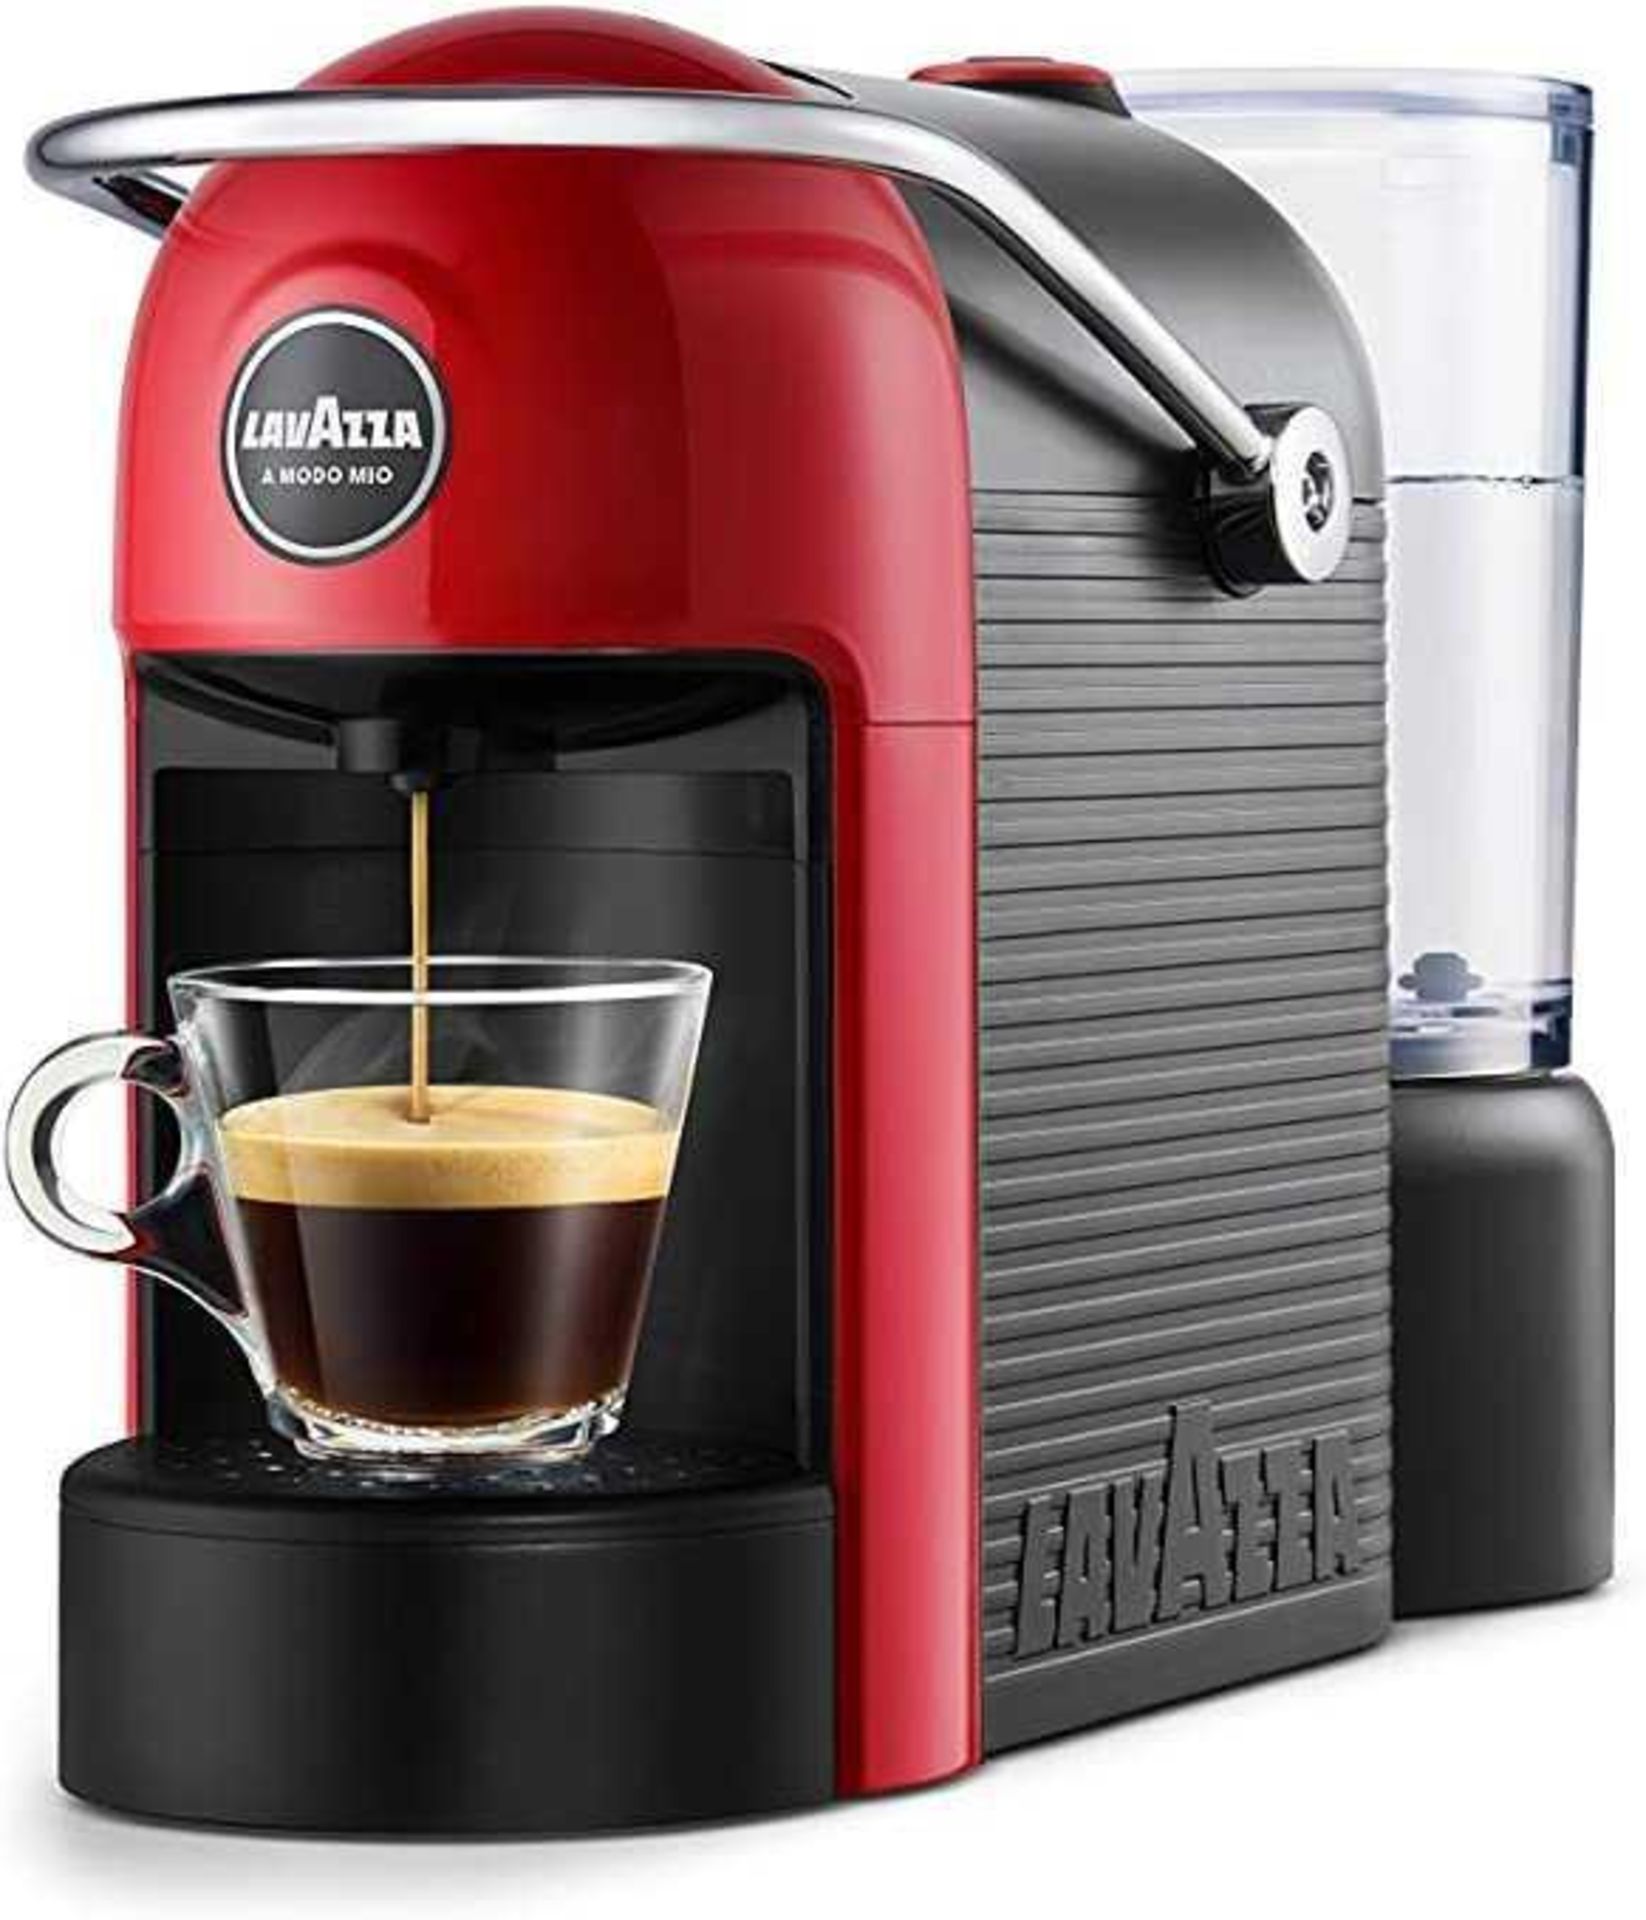 RRP £100 Boxed Jolie Lavazza Coffee Machine